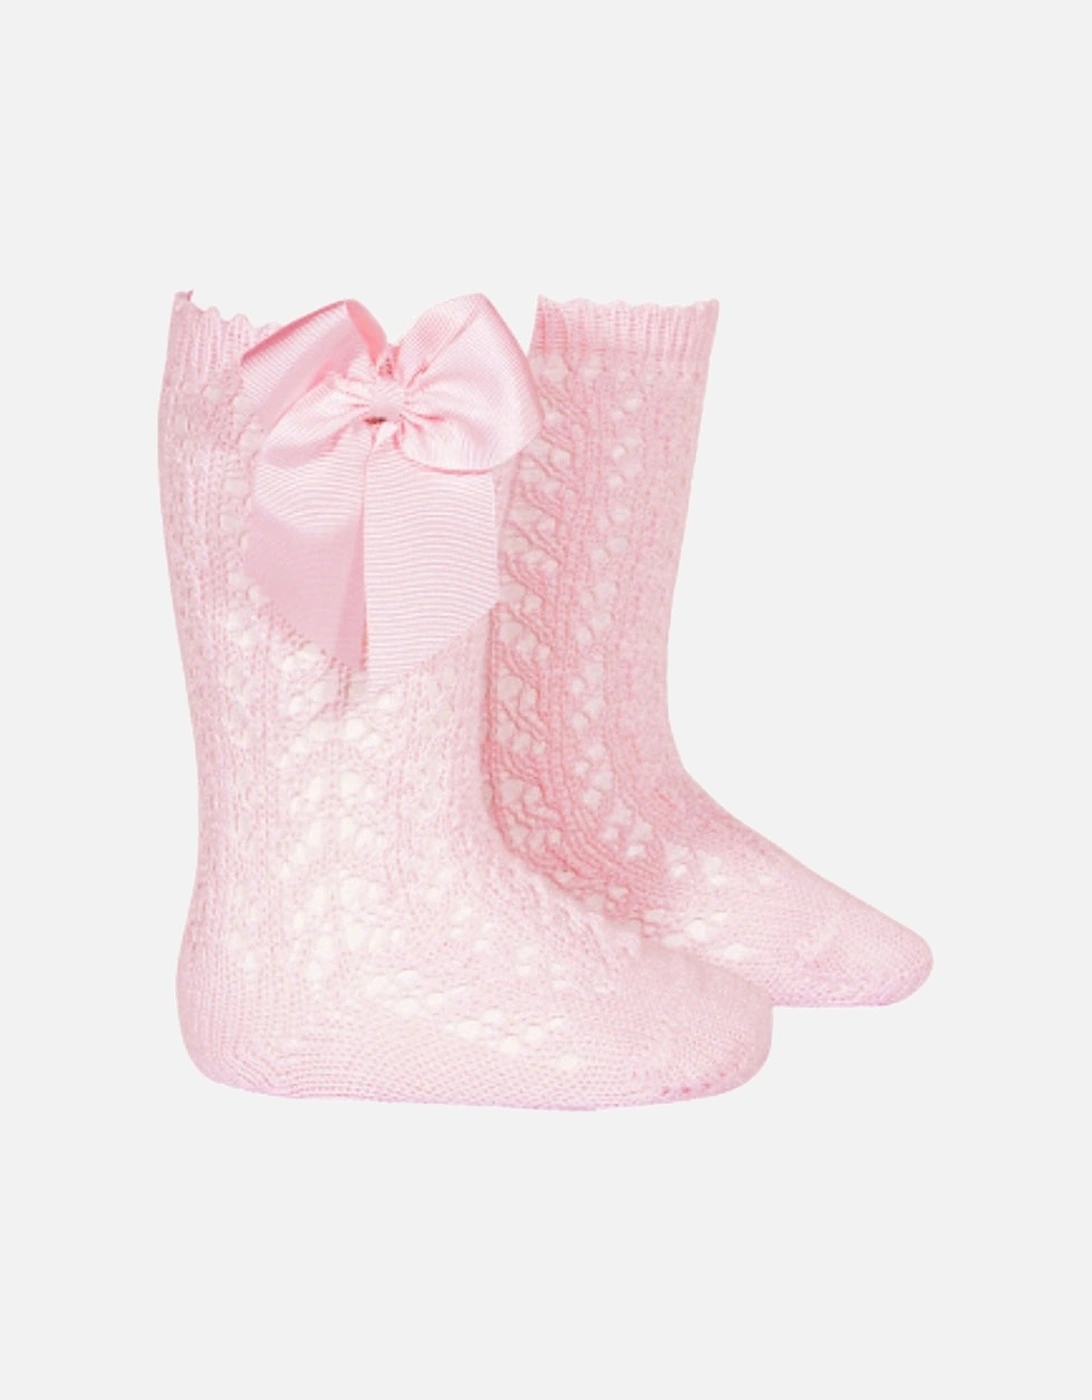 Pale Pink Openwork Knee Socks, 2 of 1